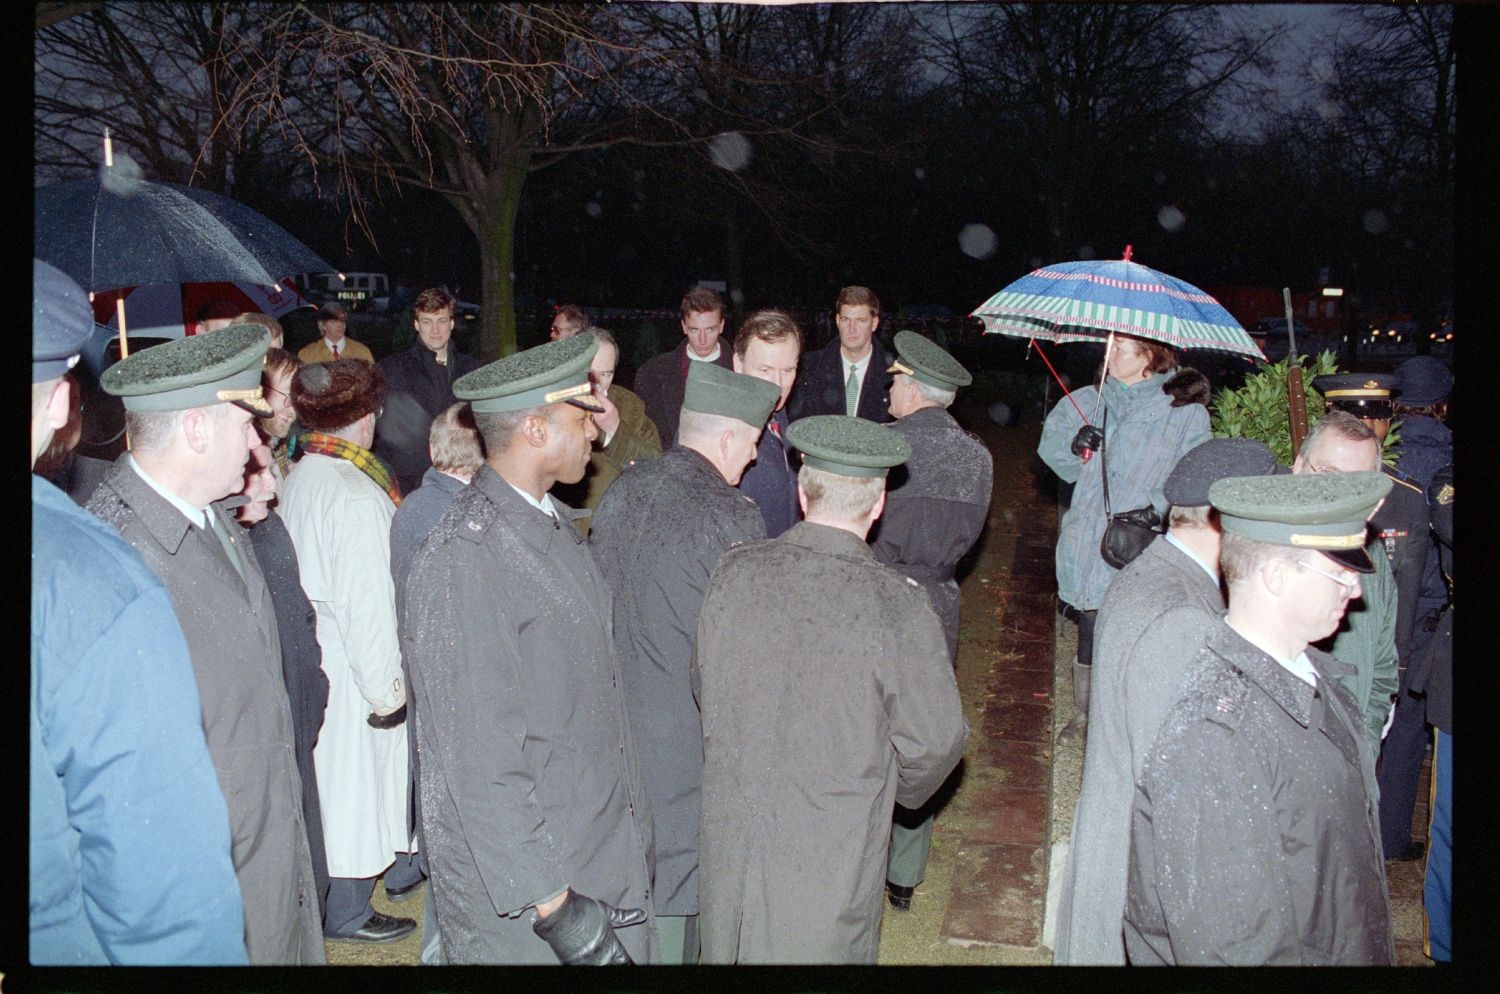 Fotografie: Enthüllung einer Gedenktafel am zukünftigen Standort der US-Botschaft in Berlin-Mitte (AlliiertenMuseum/U.S. Army Photograph Public Domain Mark)